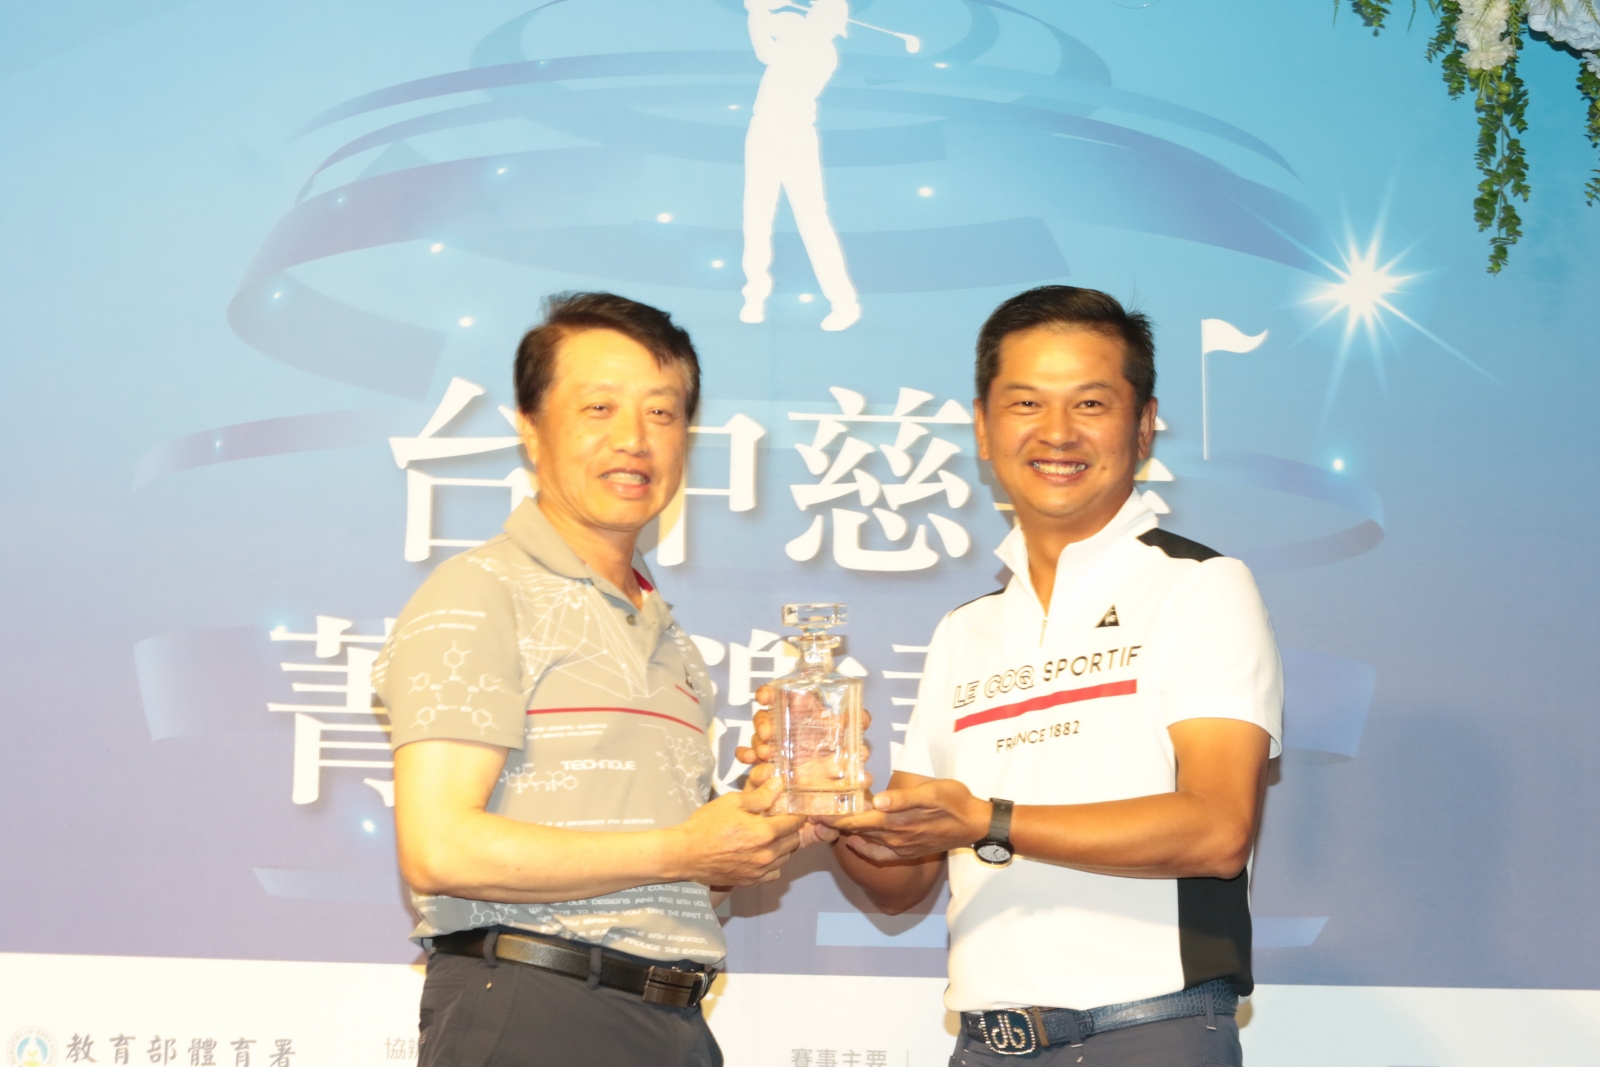 東興國際董事長馬倉國(左)拍得林文堂捐出的珍藏10年的美國名人賽紀念威士忌水晶酒瓶